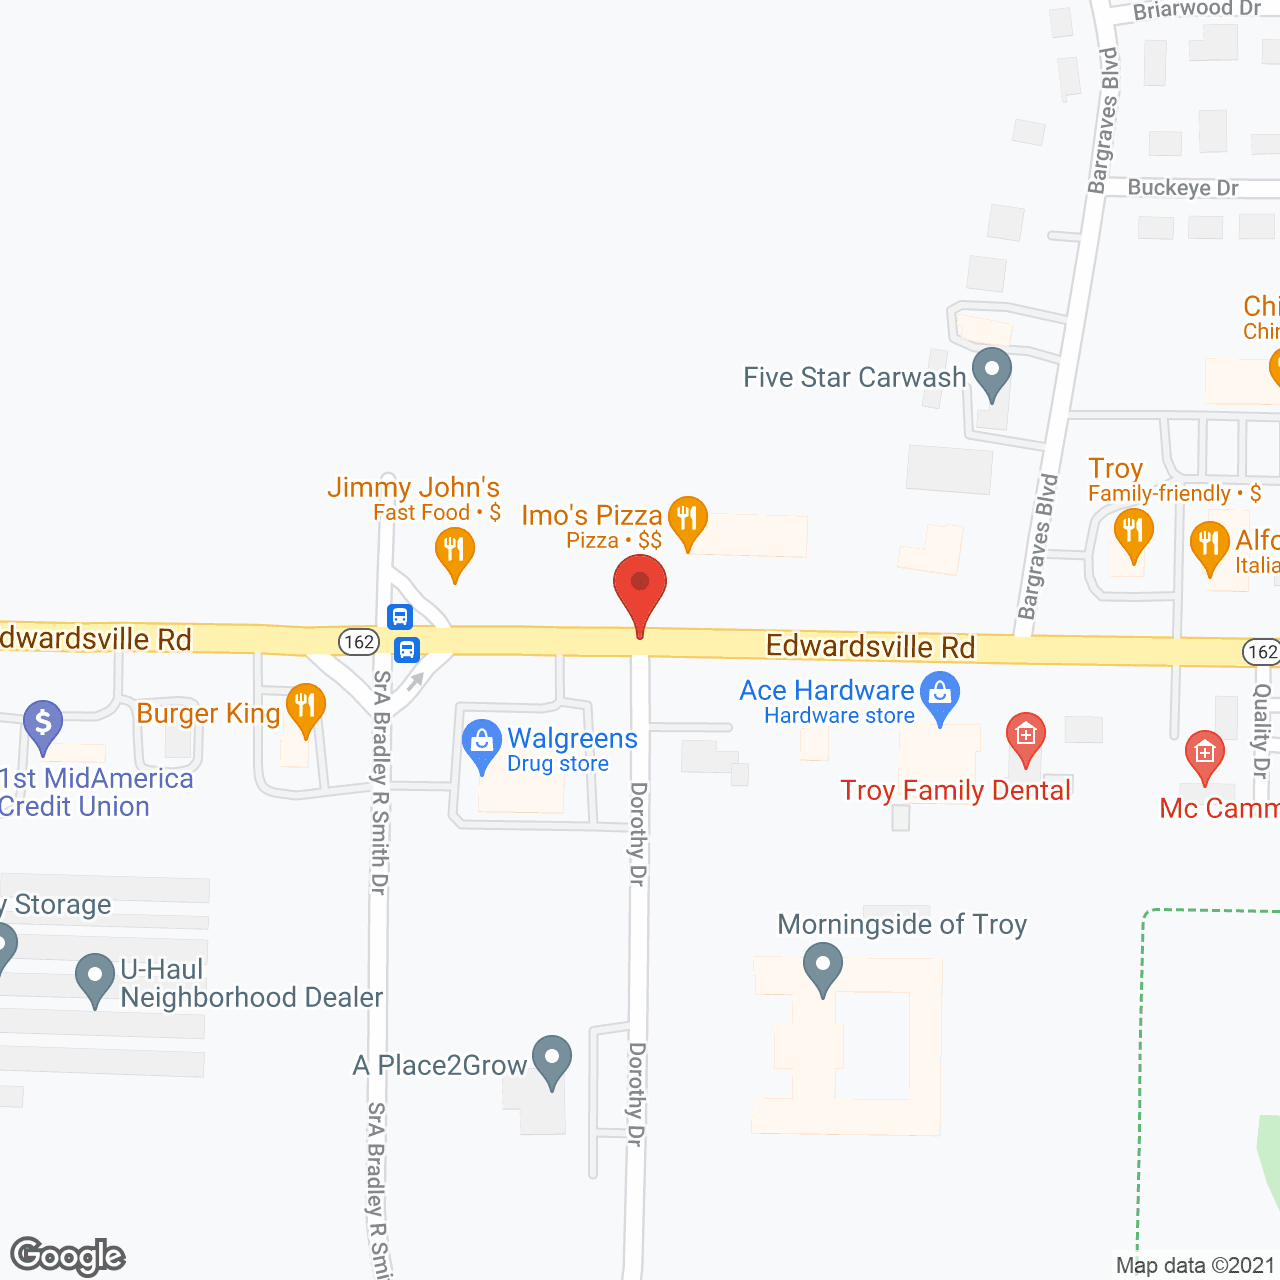 Cedarhurst of Troy in google map